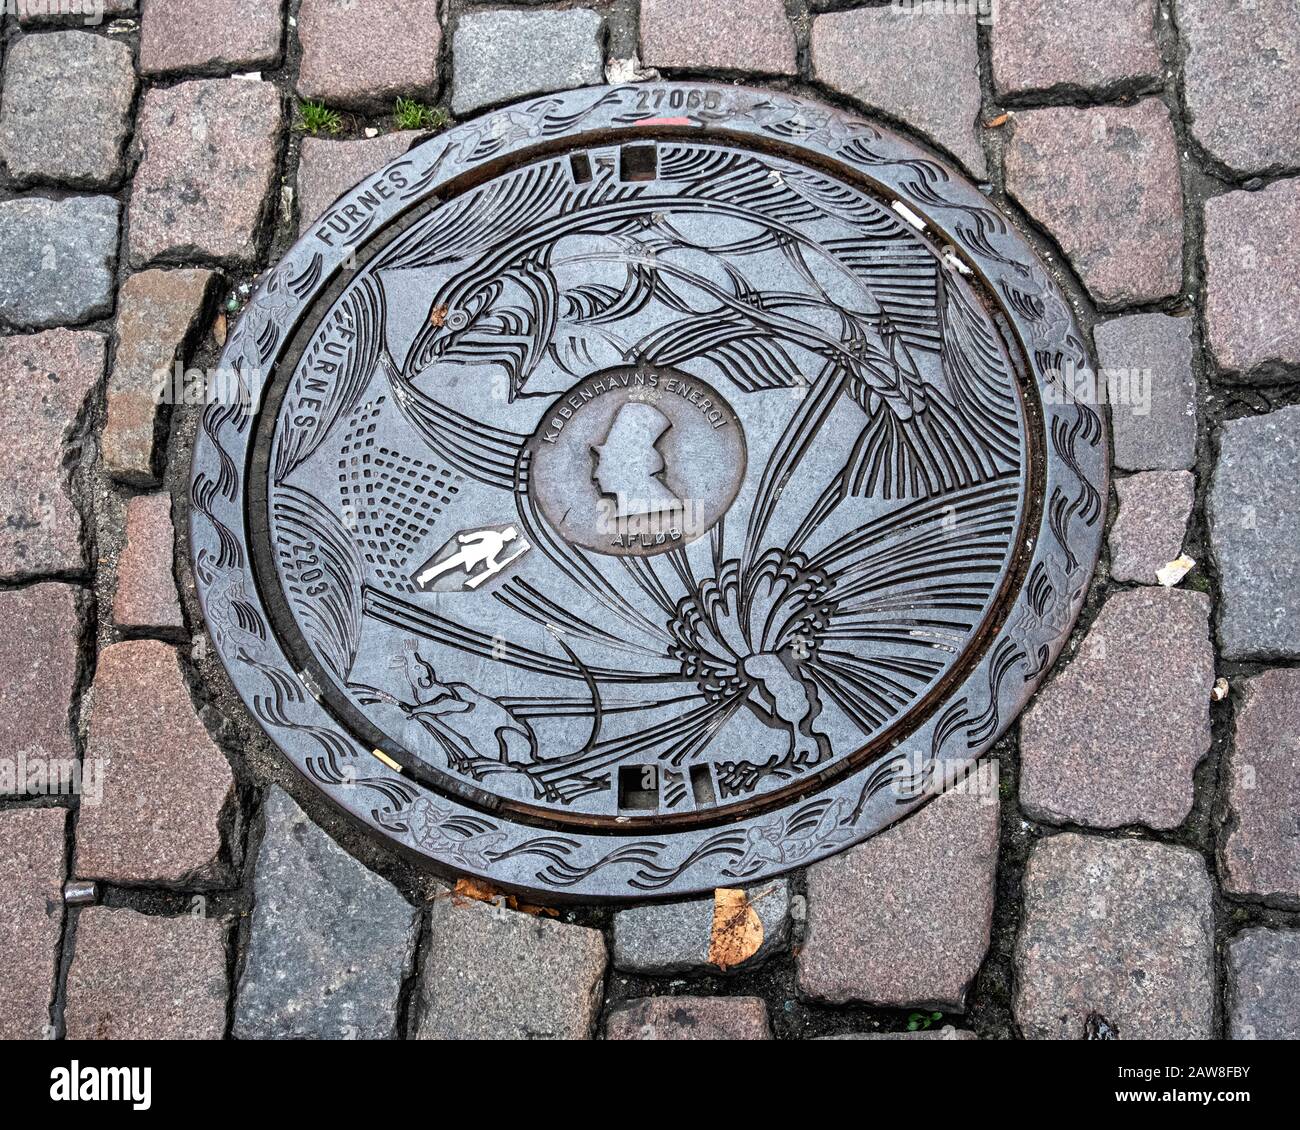 La couverture de trou d'homme conçue par Peter Hentze illustre l'histoire de Hans Christian Andersen, le Soldier De l'étain Ferme. Copenhague, Danemark Banque D'Images